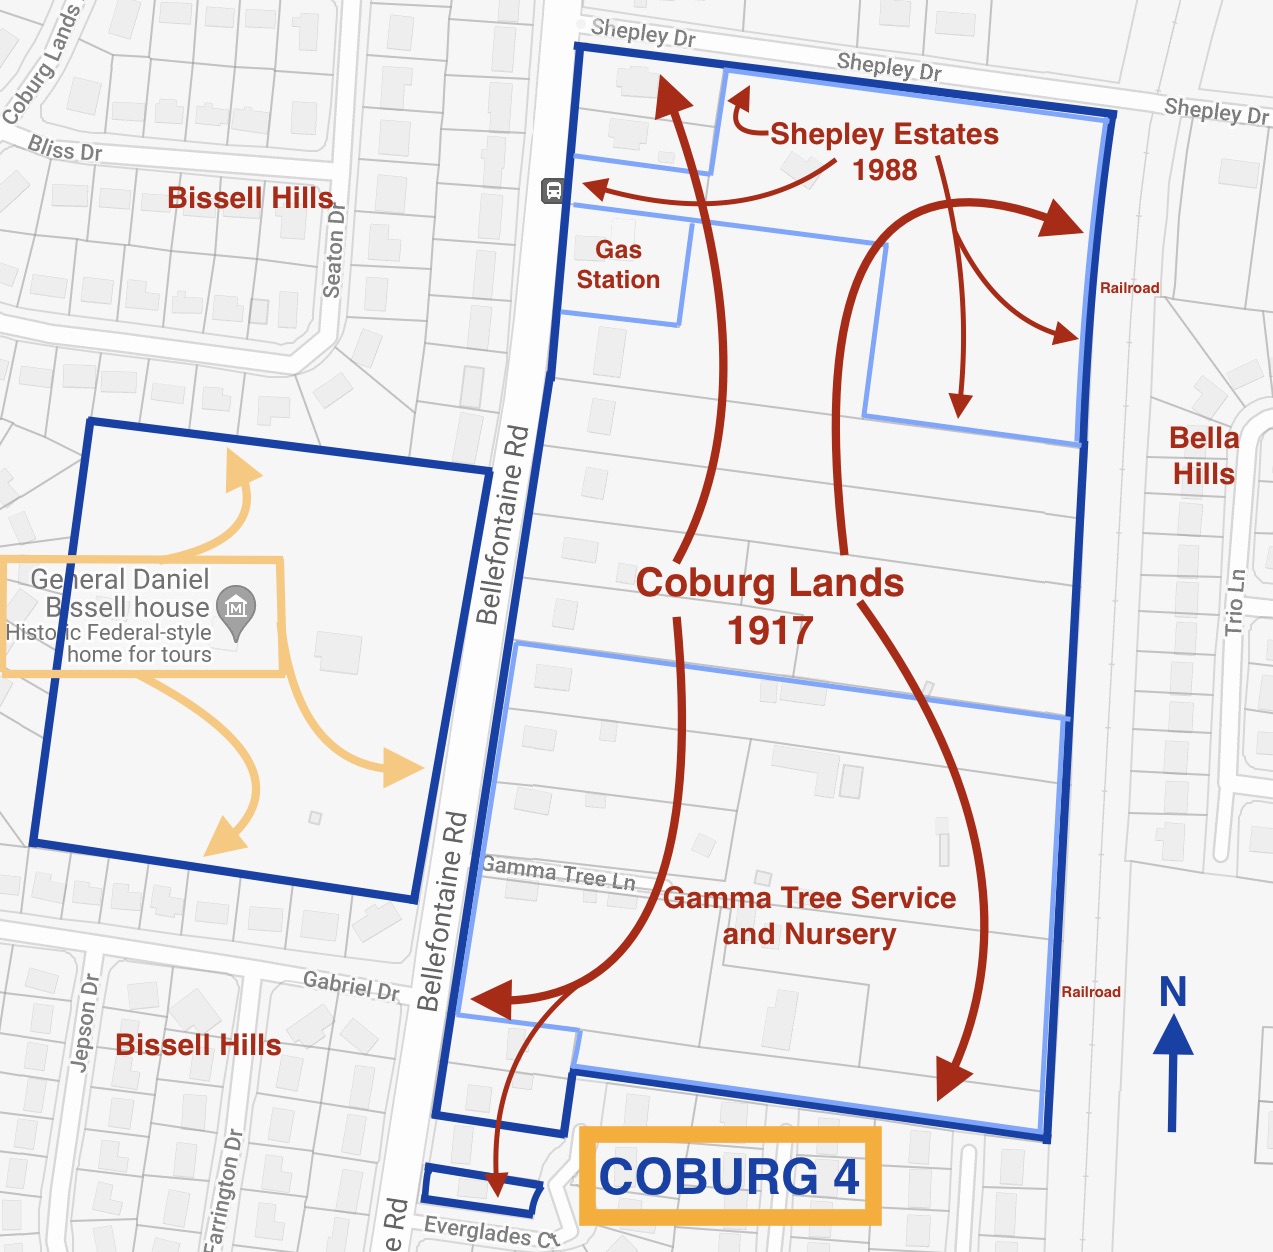 COBURG 4 MAP